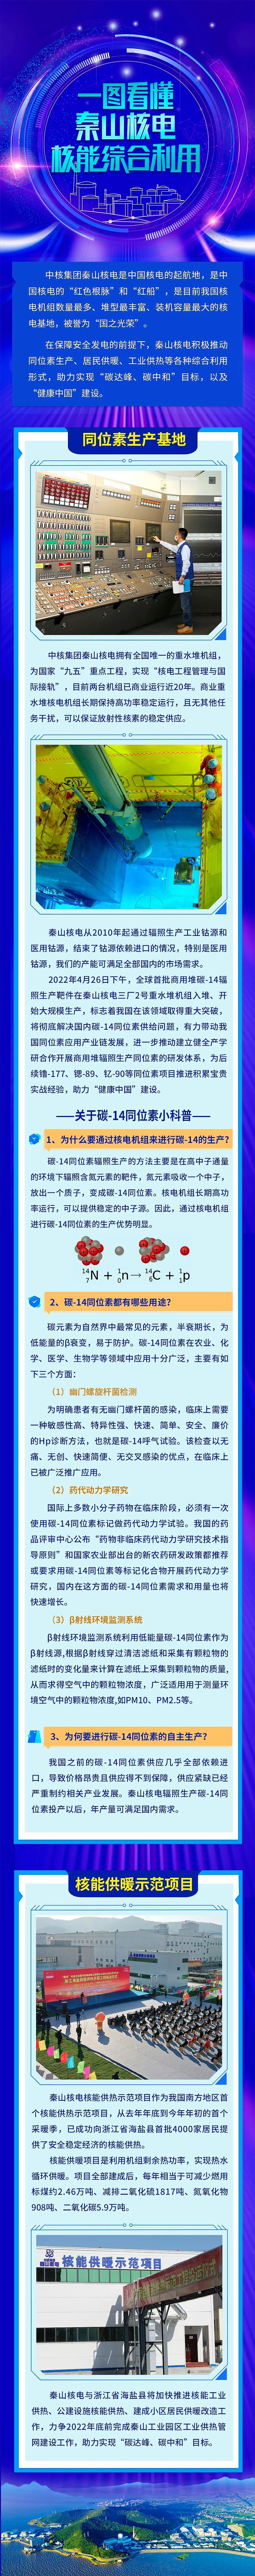 中国全球首次实现商用堆生产碳-14同位素 - 3